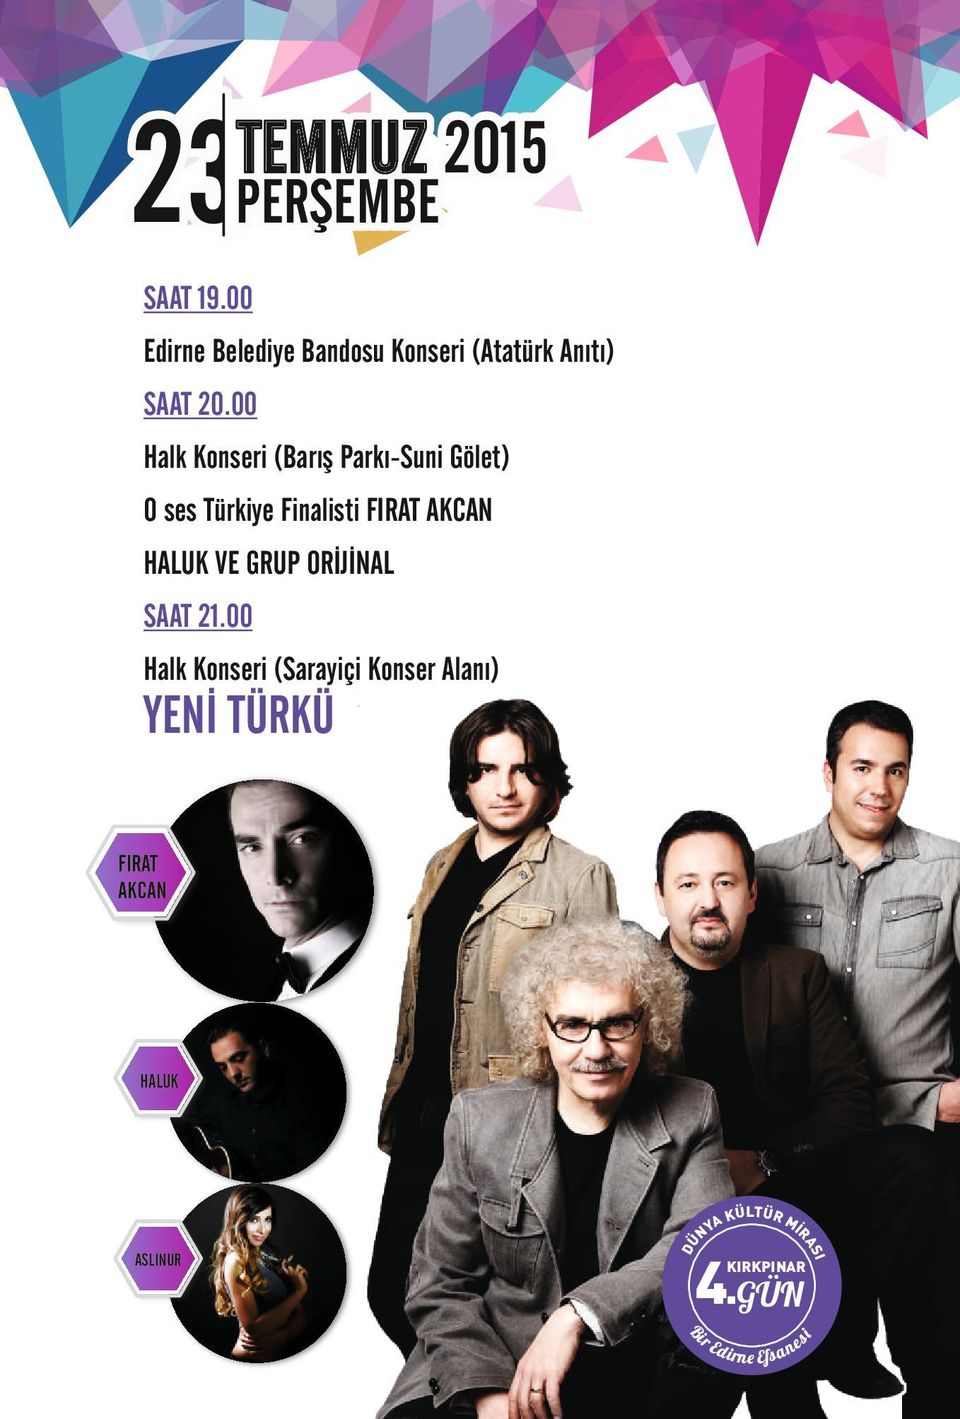 00 Halk Konseri (Barış Parkı-Suni Gölet) O ses Türkiye Finalisti FIRAT